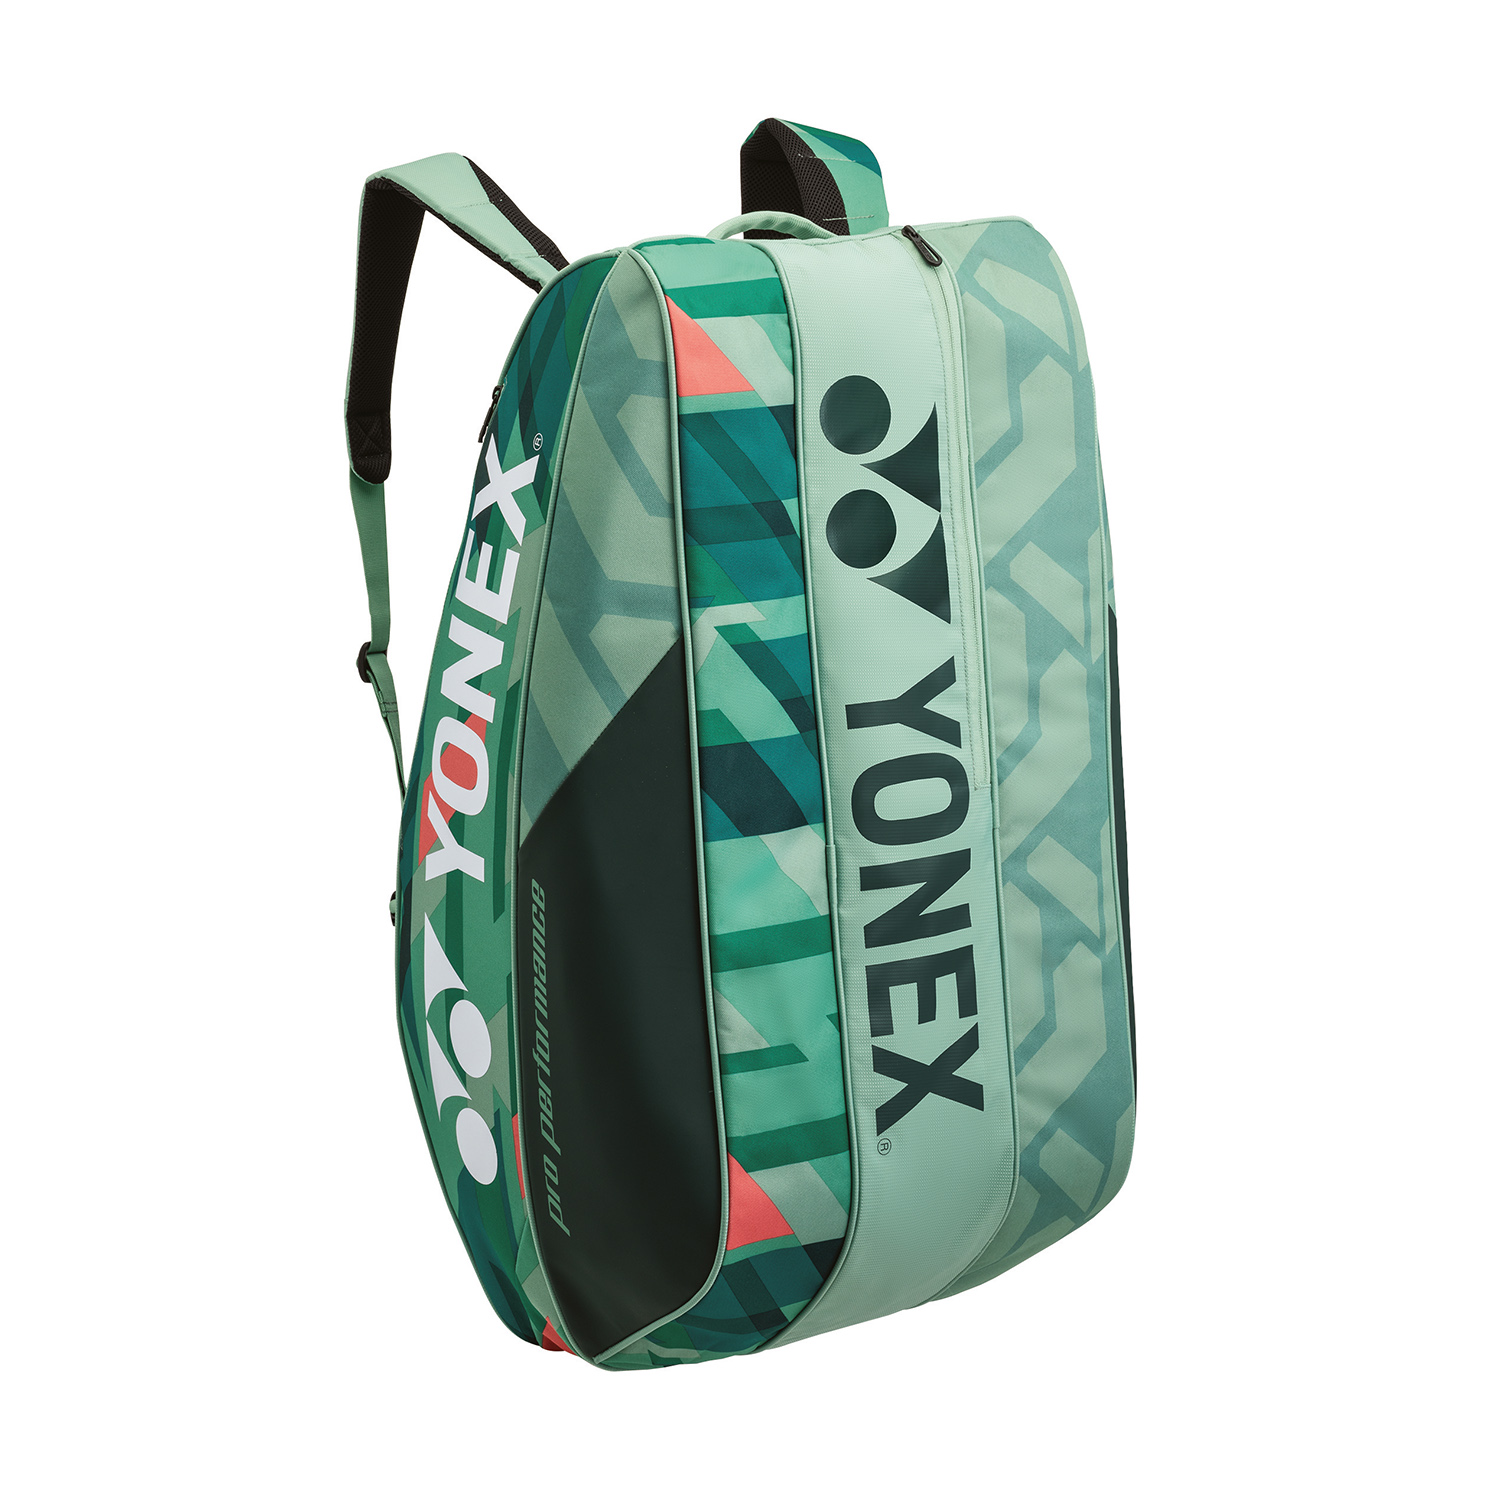 Yonex Bag Pro x 9 Bag - Olive Green